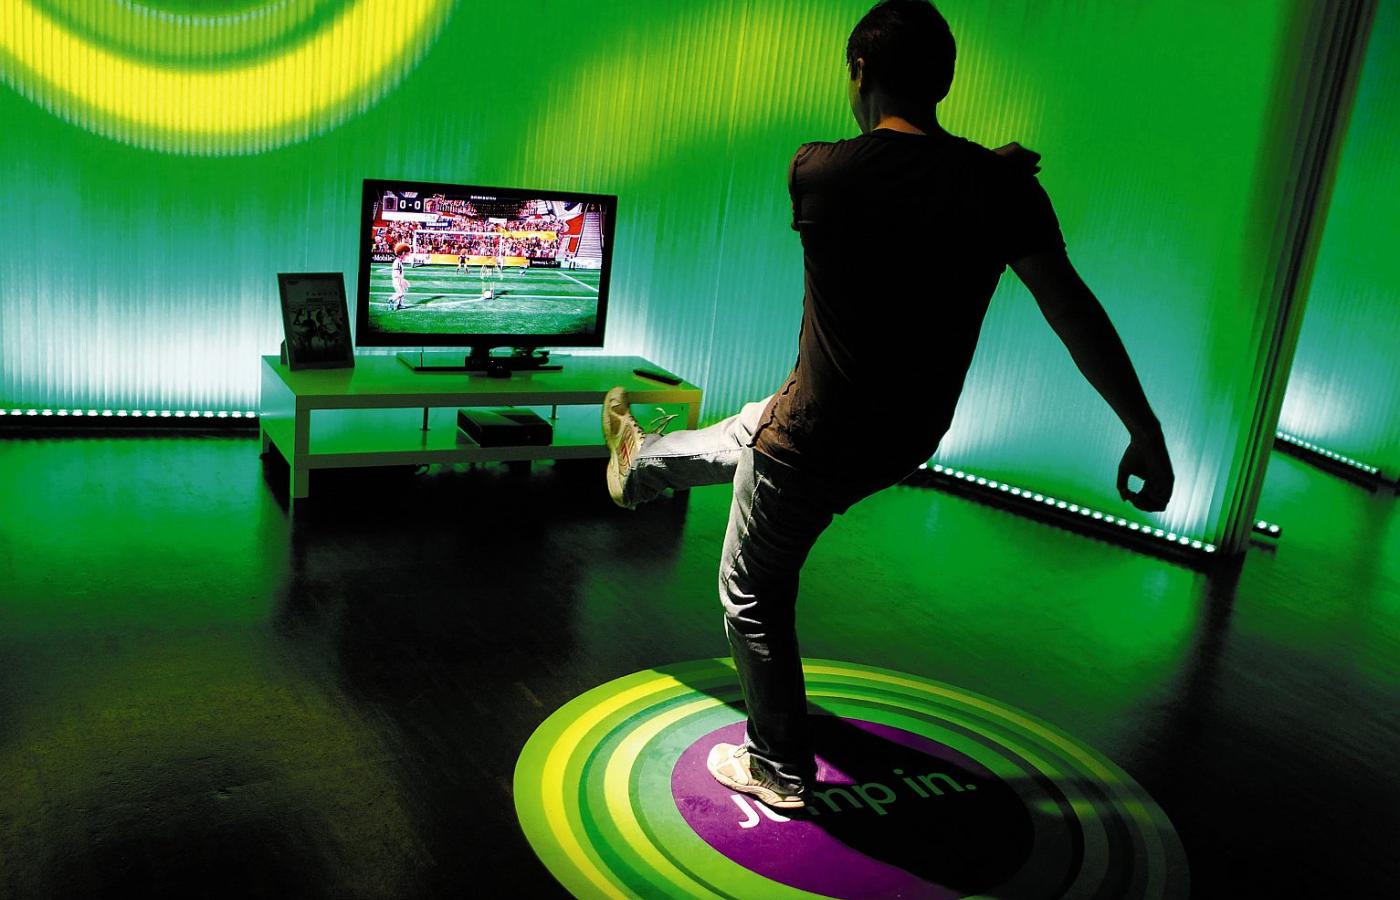 Jest Kinect - jest zabawa. Musi byc jeszcze sporo miejsca, żeby nie zdemolować pokoju lub sprzętu.